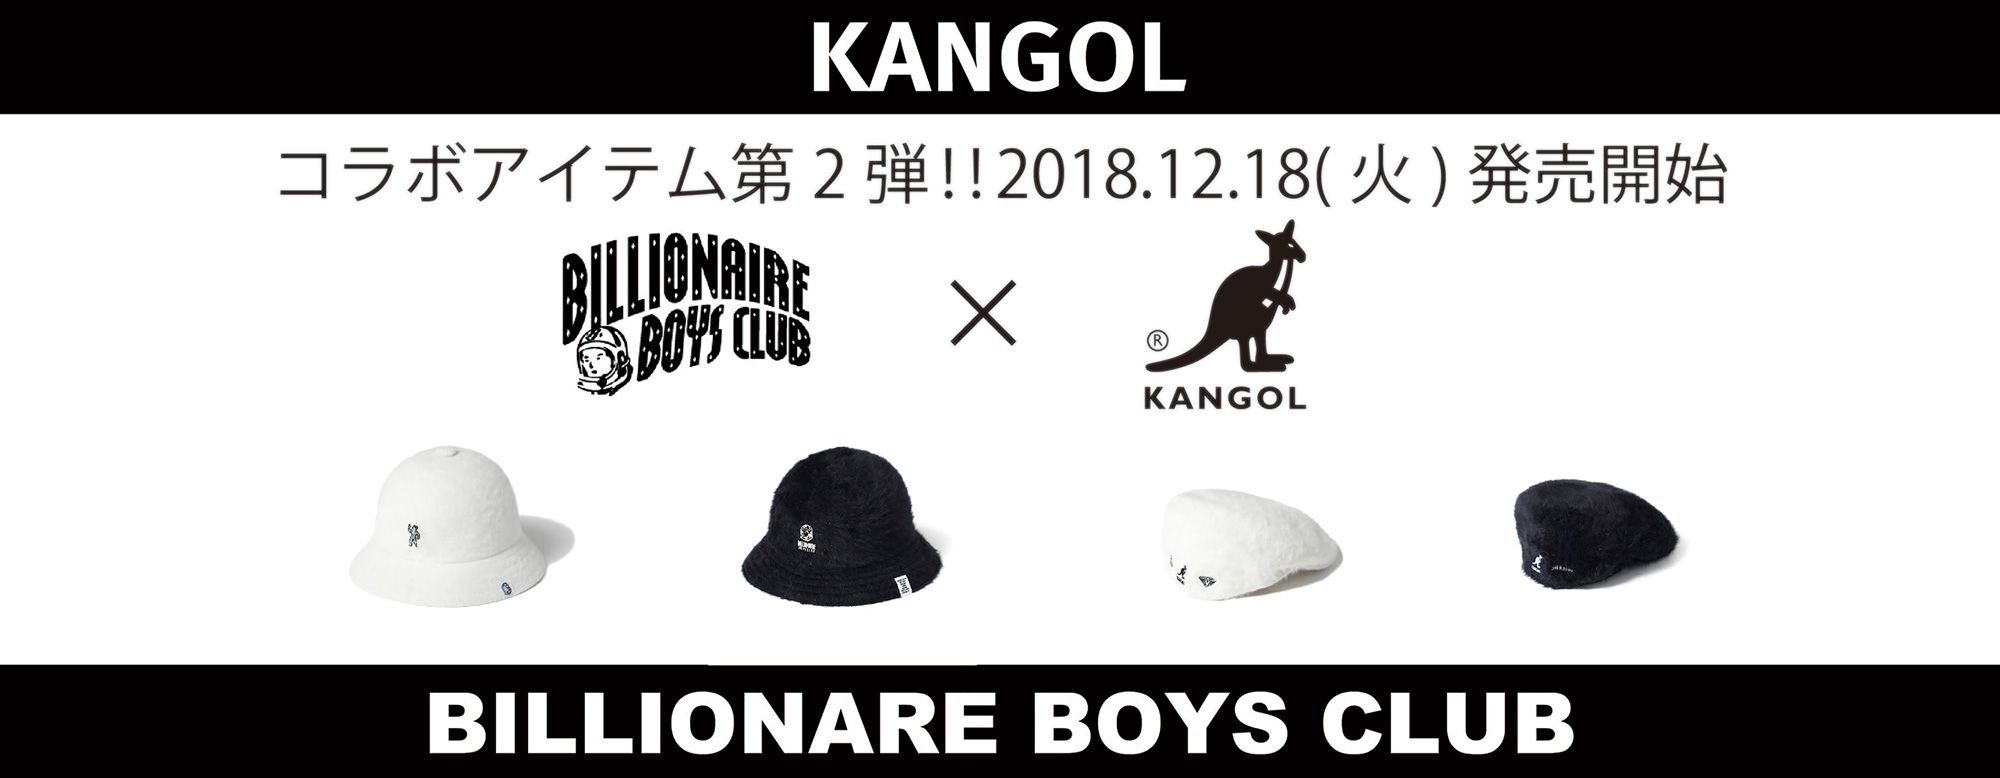 第二弾【BILLIONAIRE BOYS CLUB】×【KANGOL】コラボアイテム発売決定!!